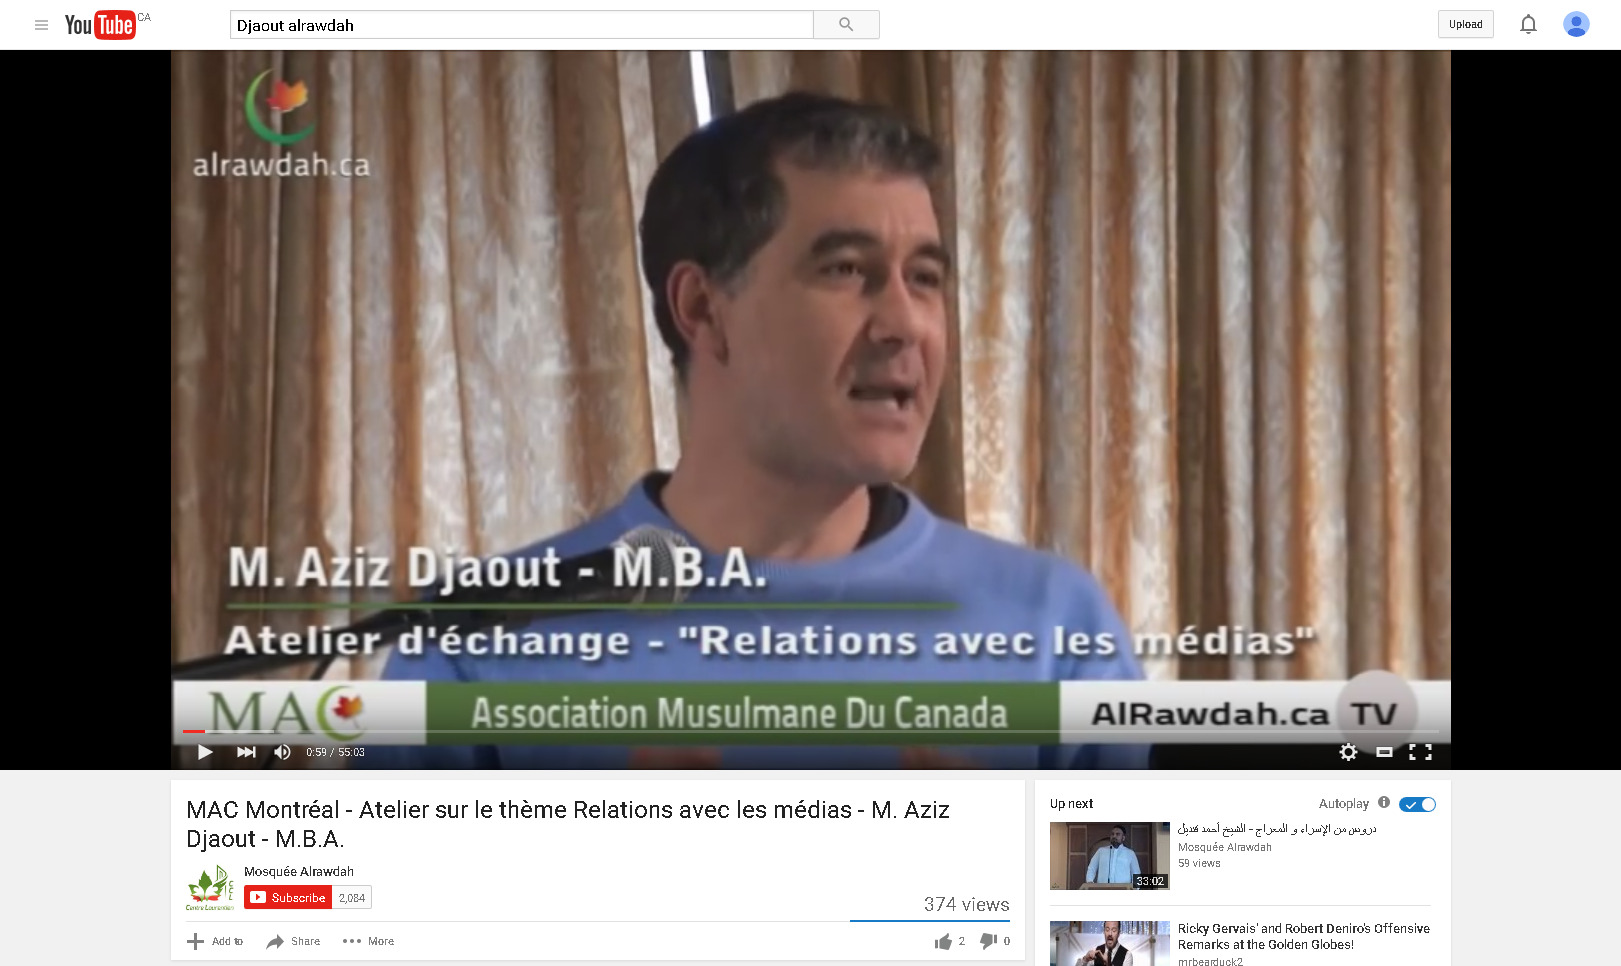 MAC Montréal - Atelier sur le thème Relations avec les médias - M. Aziz Djaout - M.B.A. - YouTube 2016-01-28 10-59-40